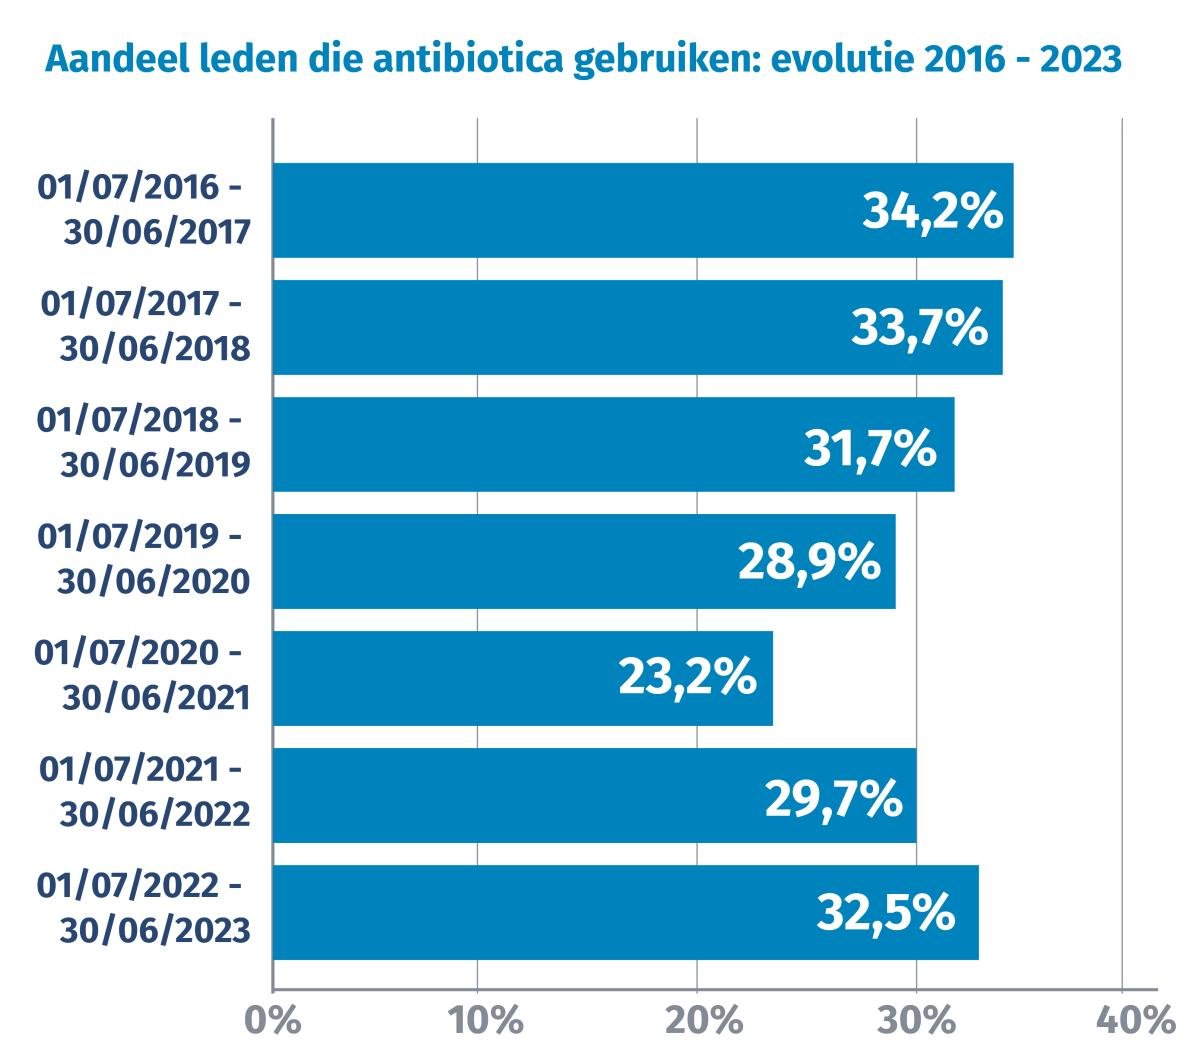 Aandeel leden die antibiotica gebruiken